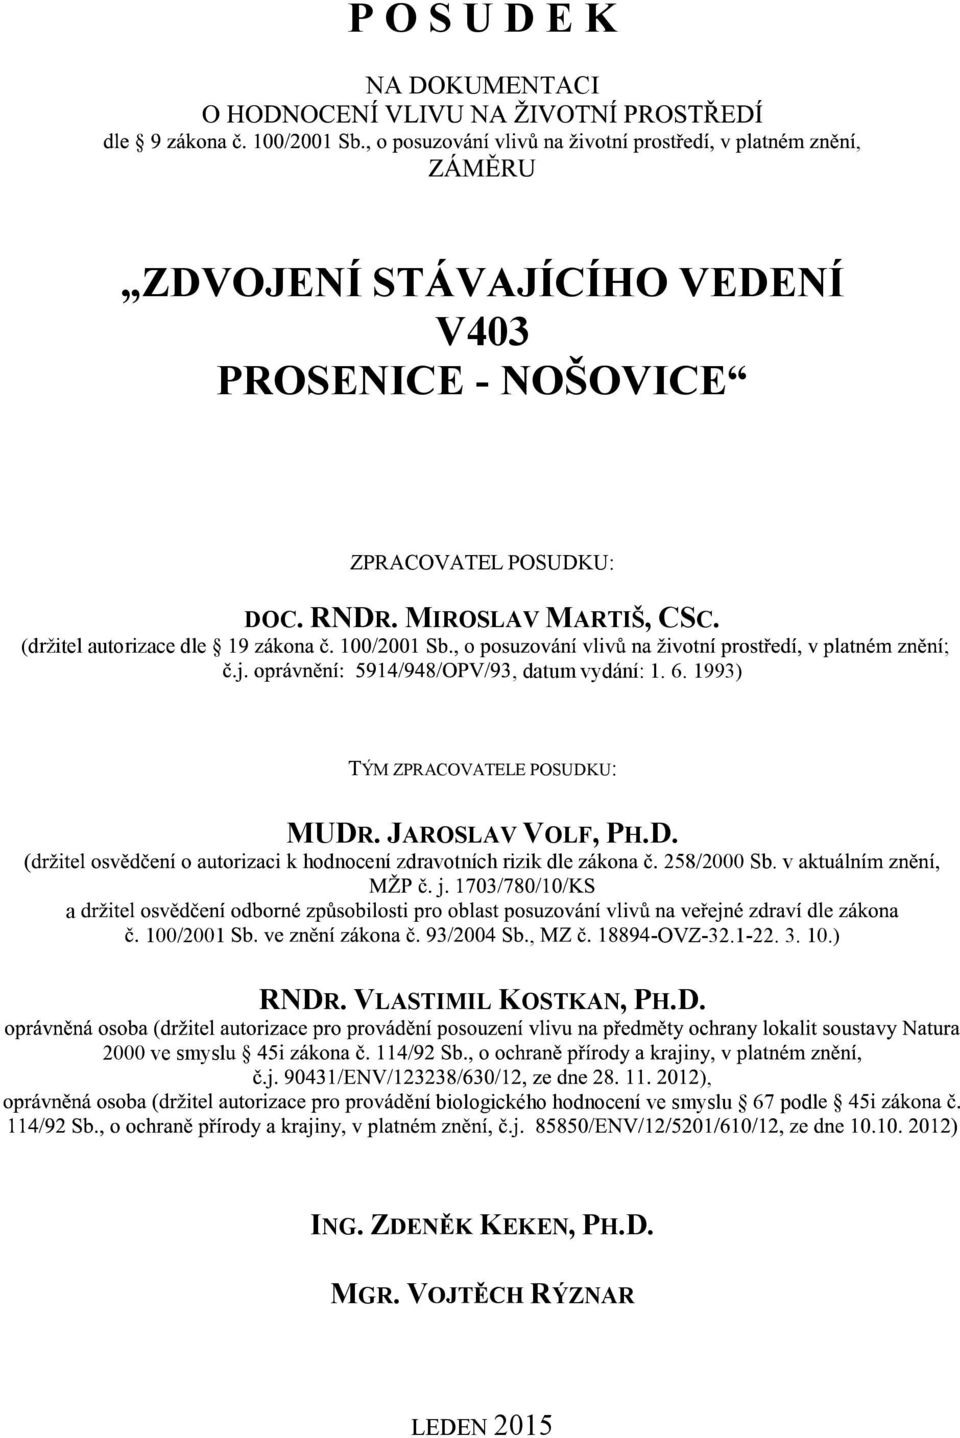 JAROSLAV VOLF, PH.D. hodnocení zdraotních rizik dle 258/2000 Sb. a 100/2001, OVZ32.122. 3. 10.) RNDR.